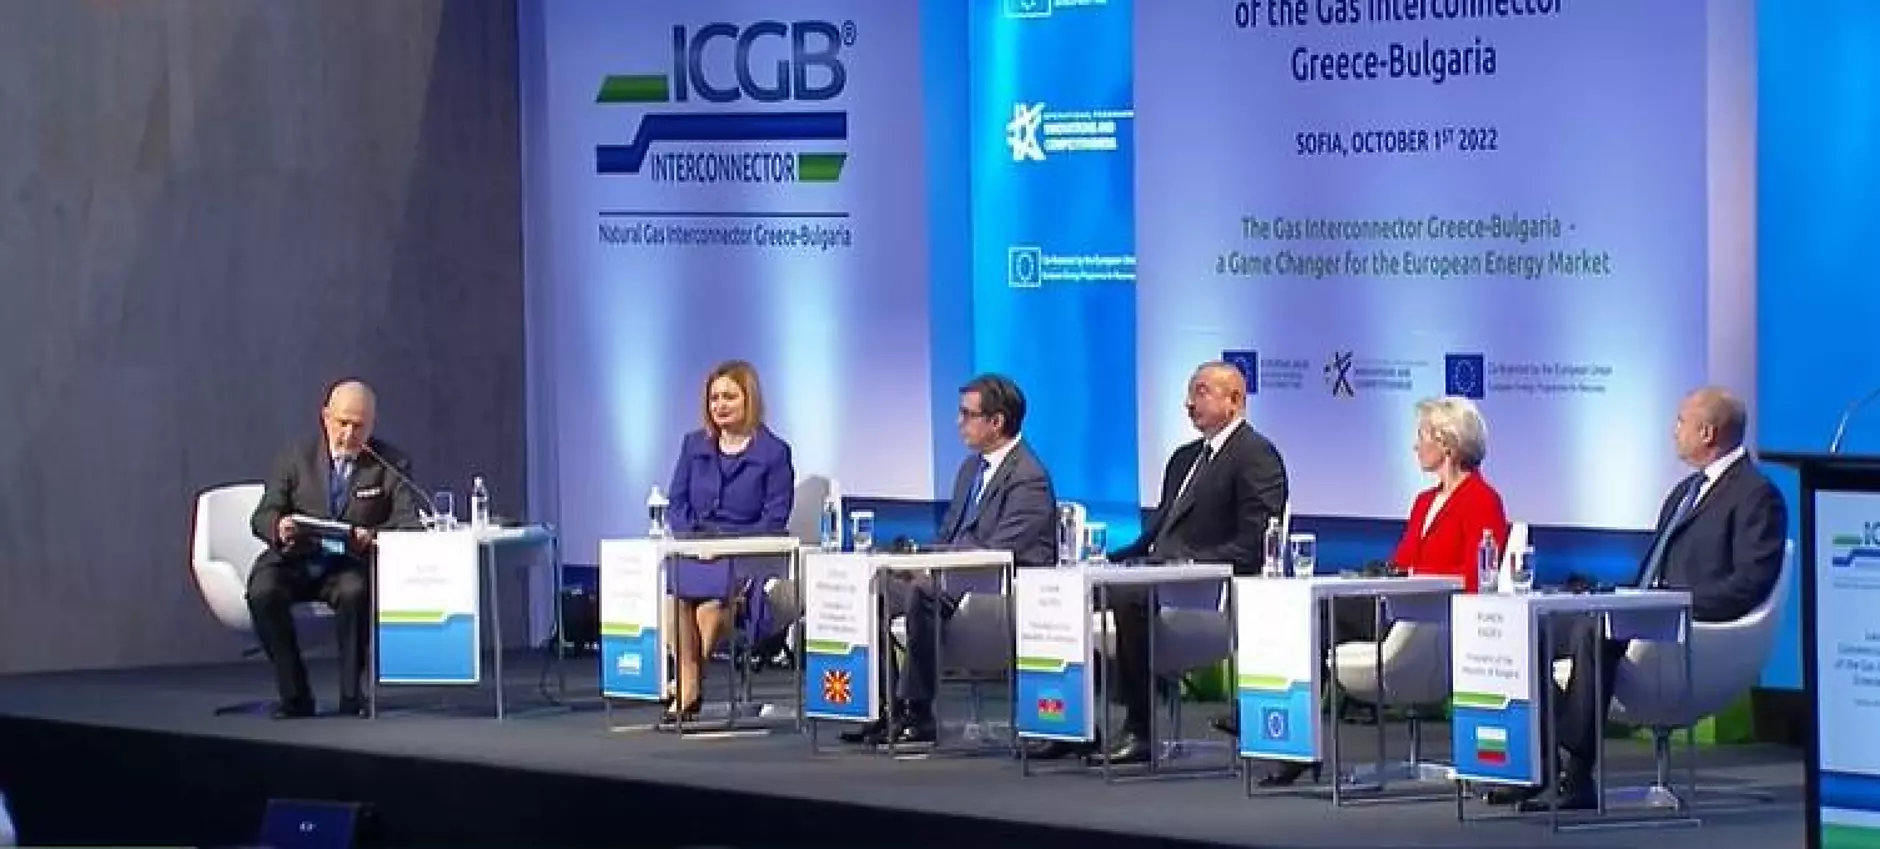 Въведоха в експлоатация газовата връзка Гърция - България